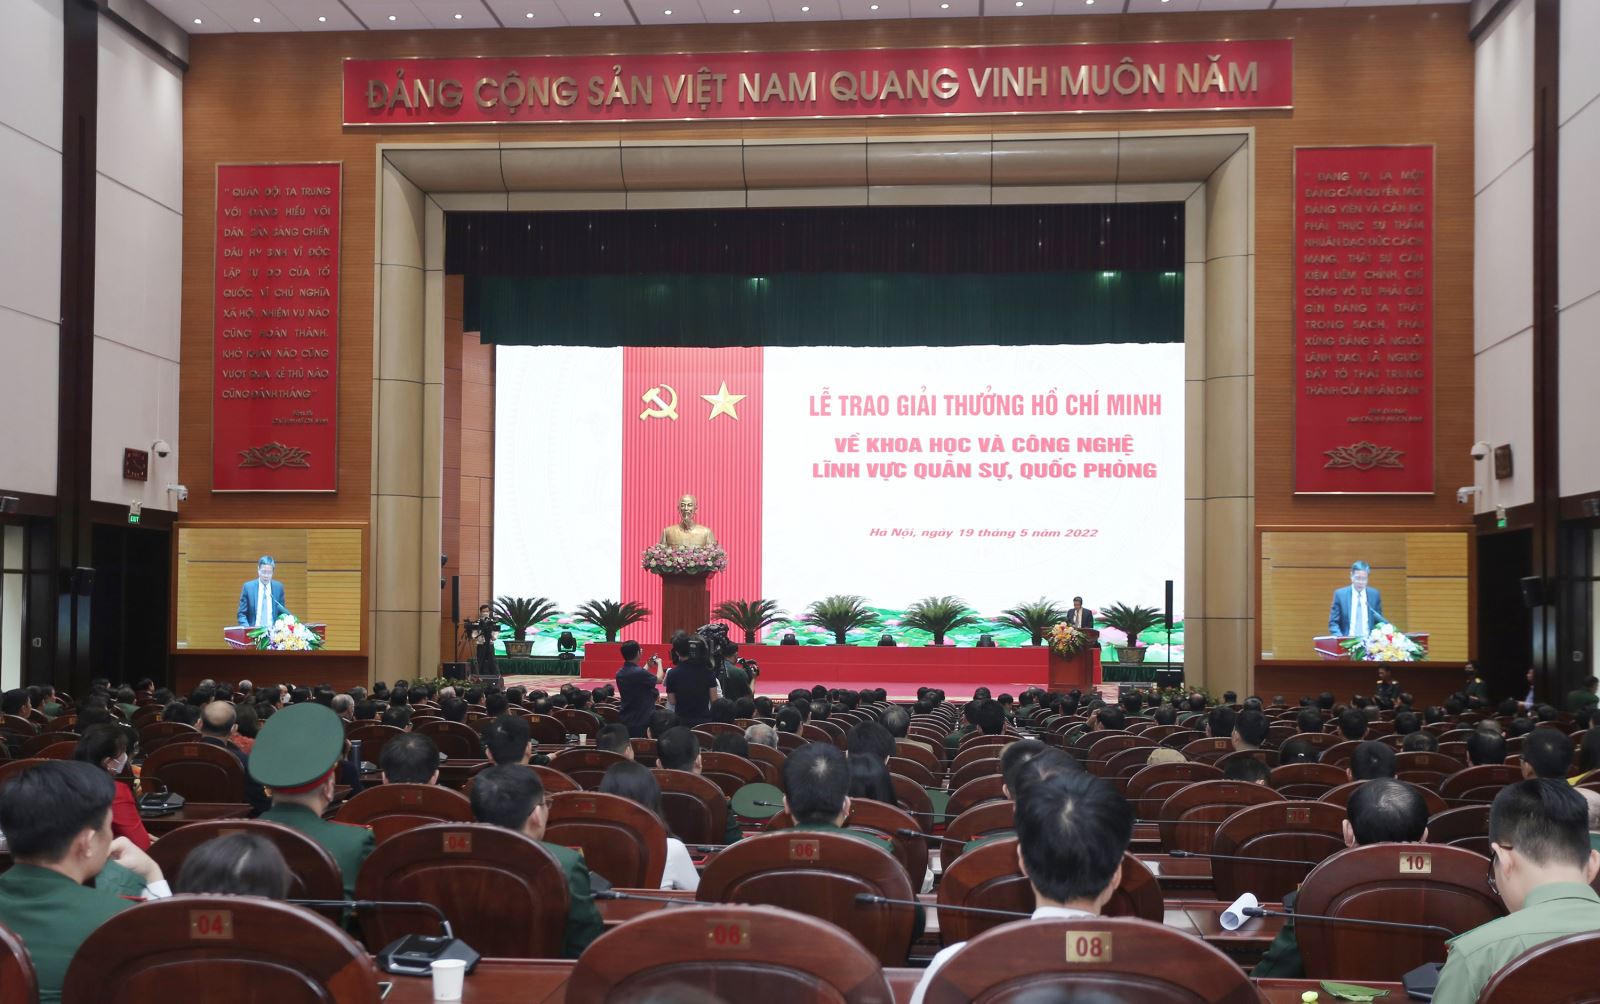 Trao Giải thưởng Hồ Chí Minh về khoa học và công nghệ lĩnh vực quân sự, quốc phòng